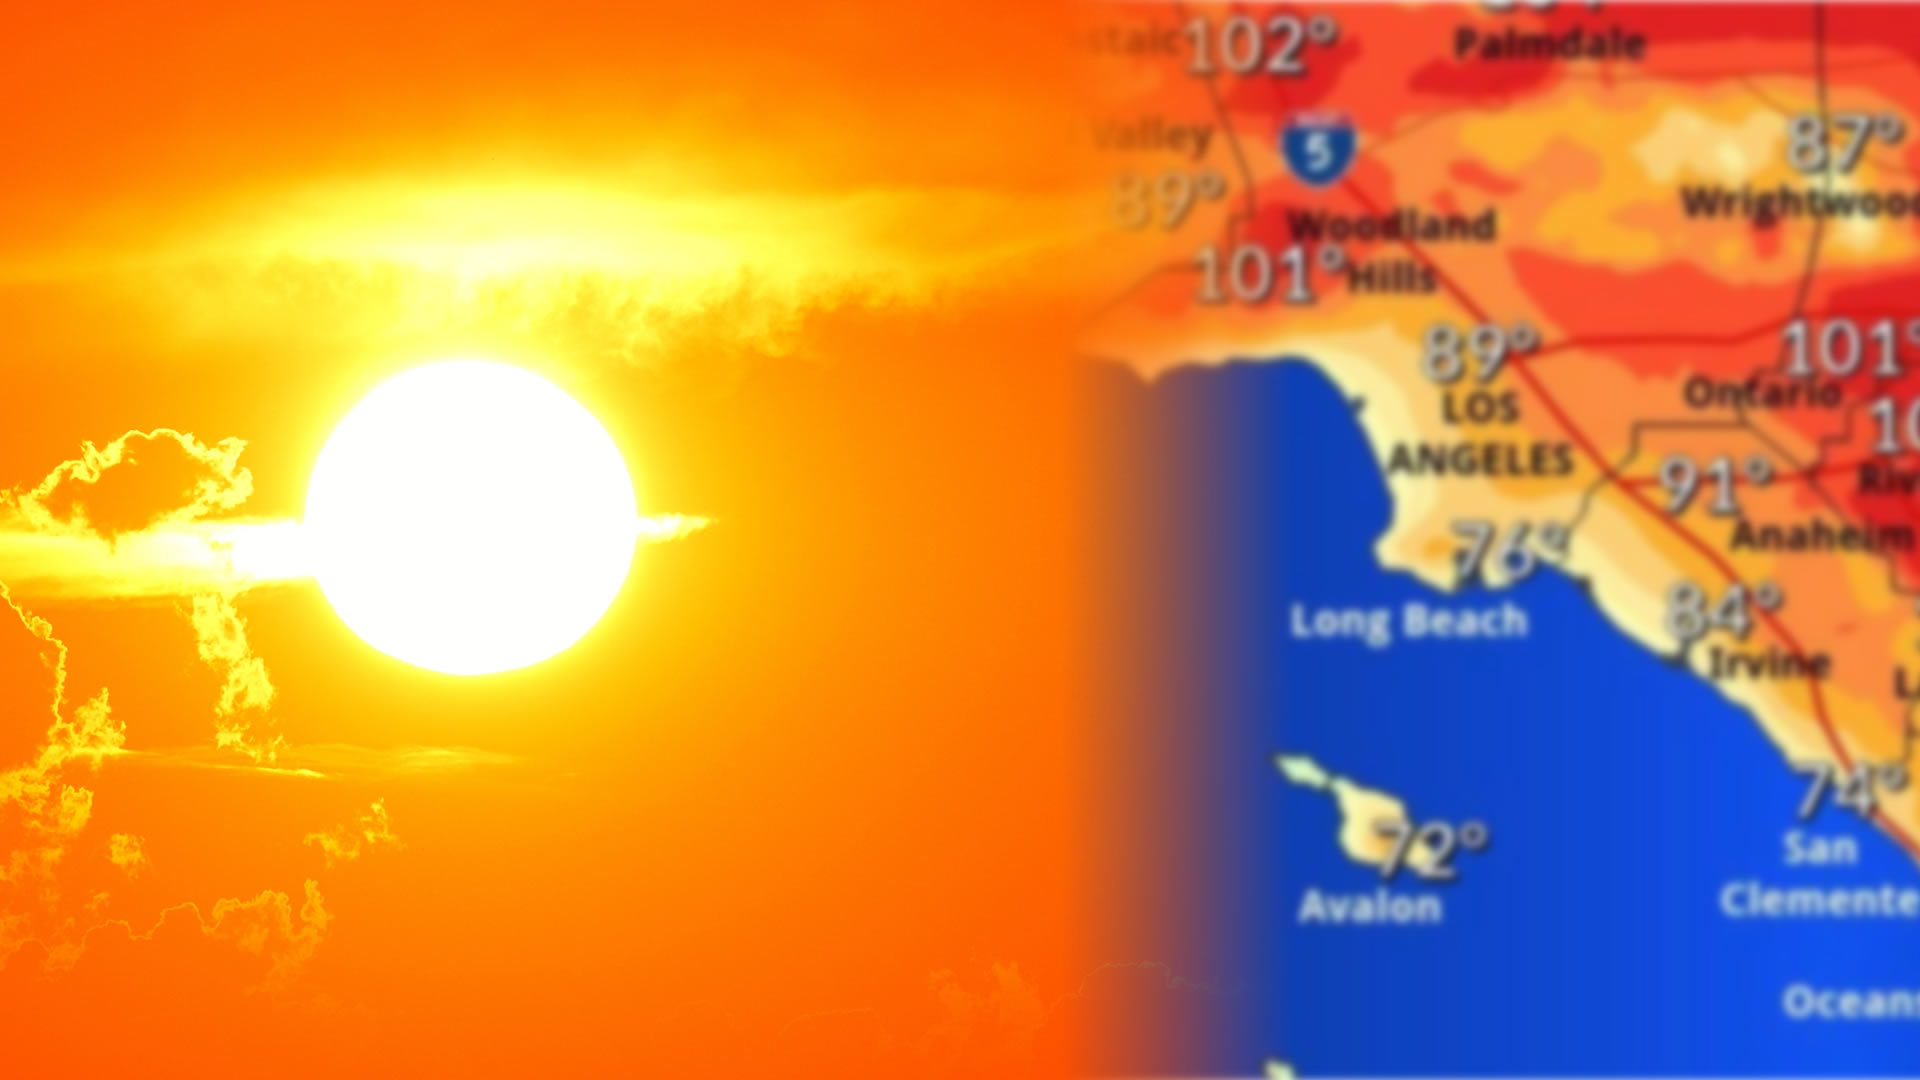 Alertan que altas temperaturas en Calirfornia podrían causar una ola mortal de calor como la de 2006